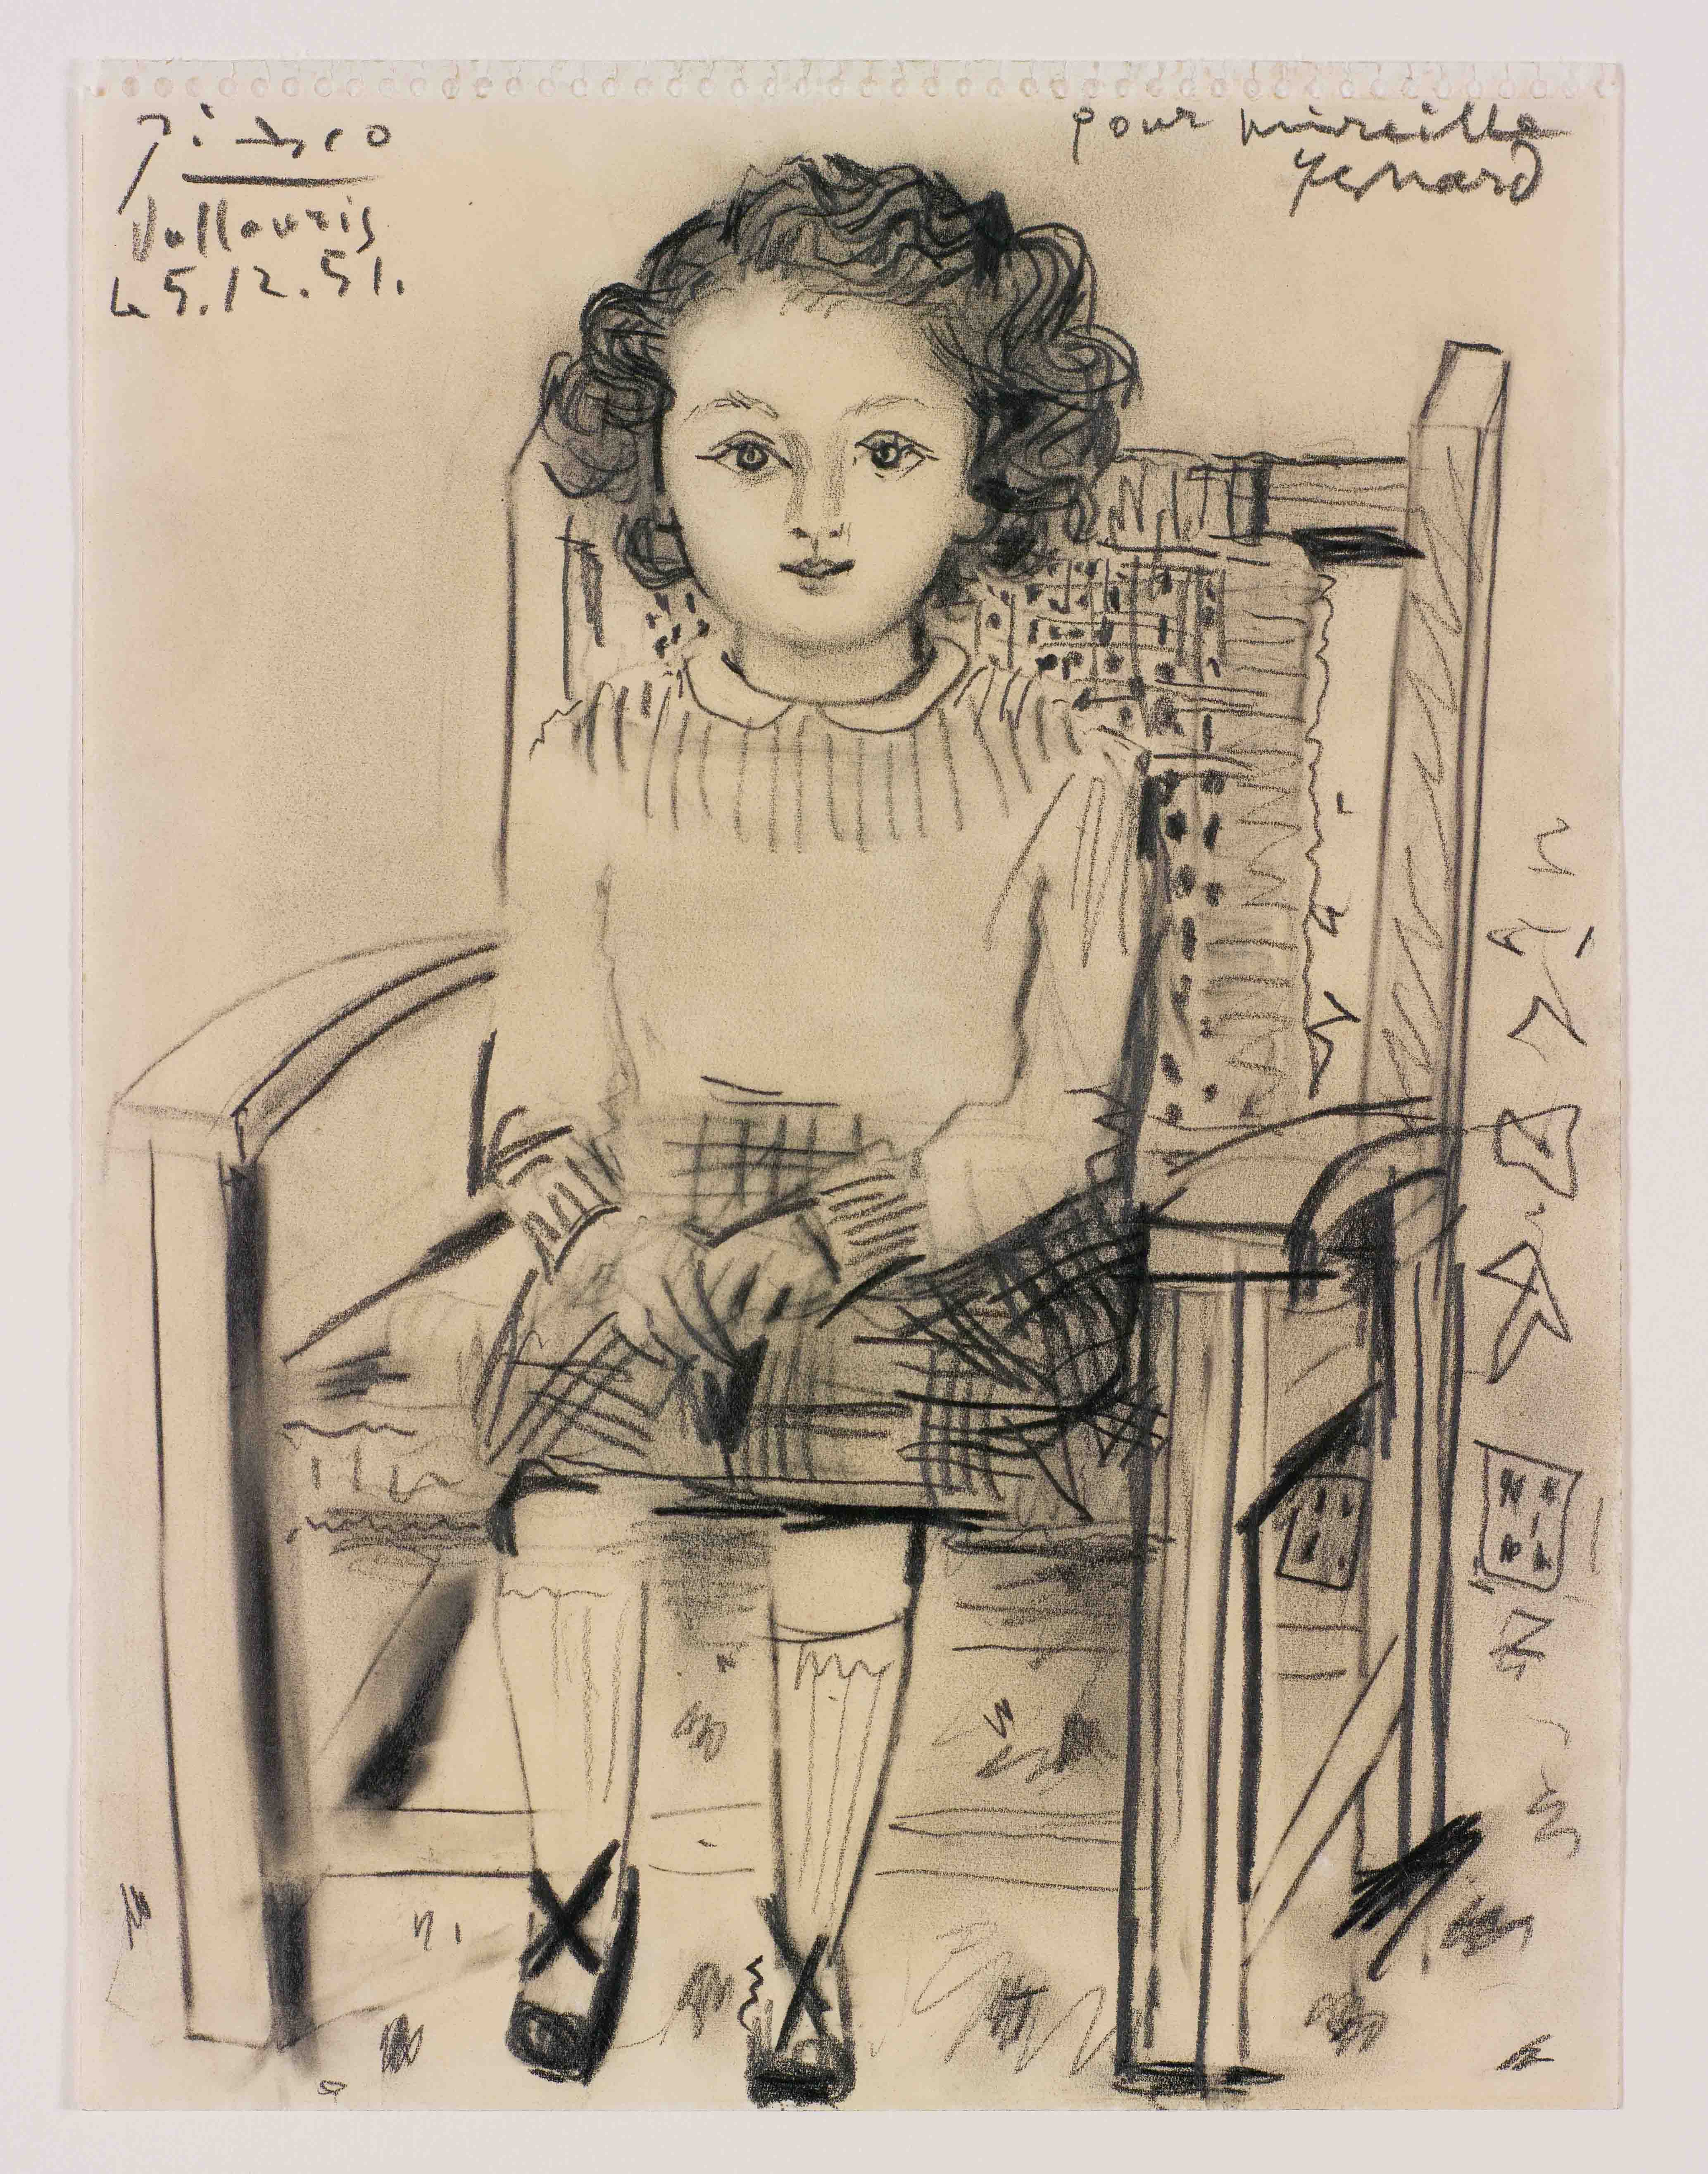 פבלו פיקאסו, "דיוקן של מיריי", עיפרון על נייר, 1951, מתוך "קירות נמסים", הגלריה האוניברסיטאית, תל-אביב